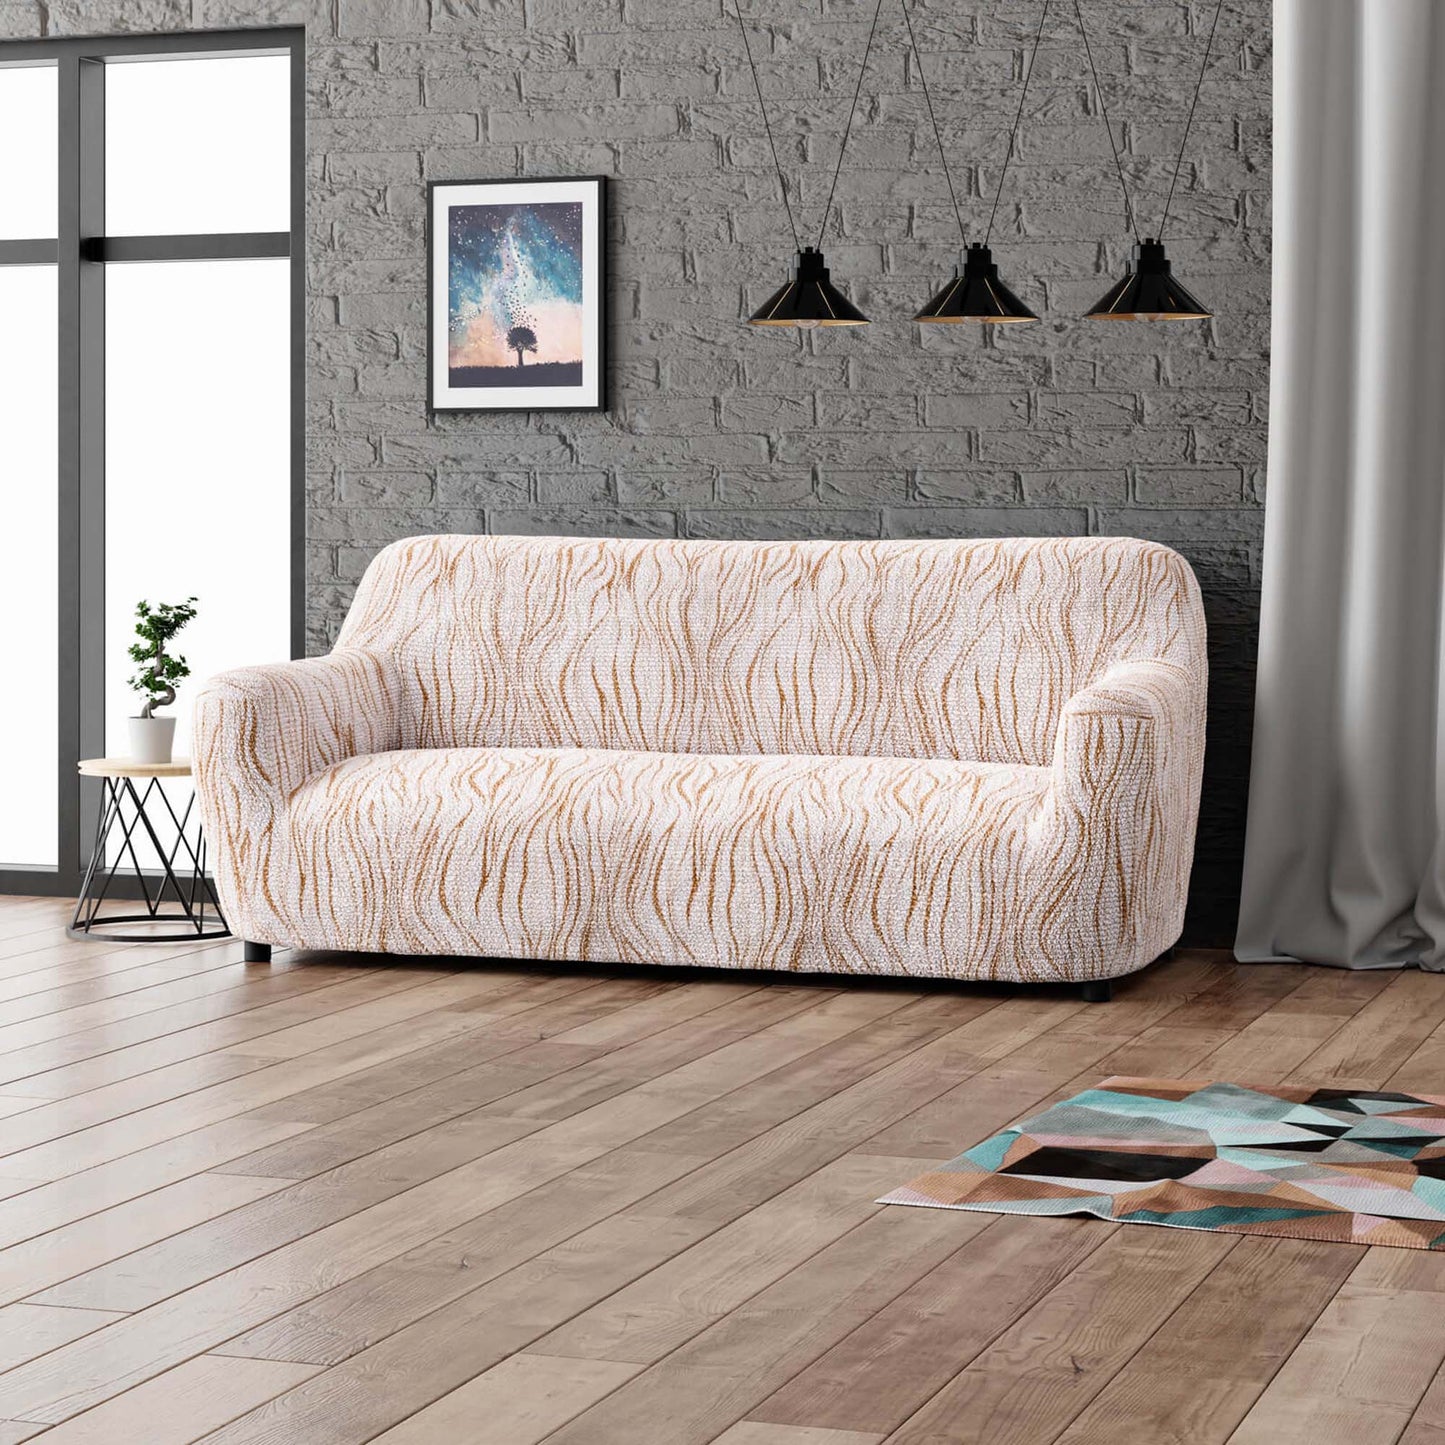 3 Seater Sofa Cover - Universo Beige, Microfibra Printed